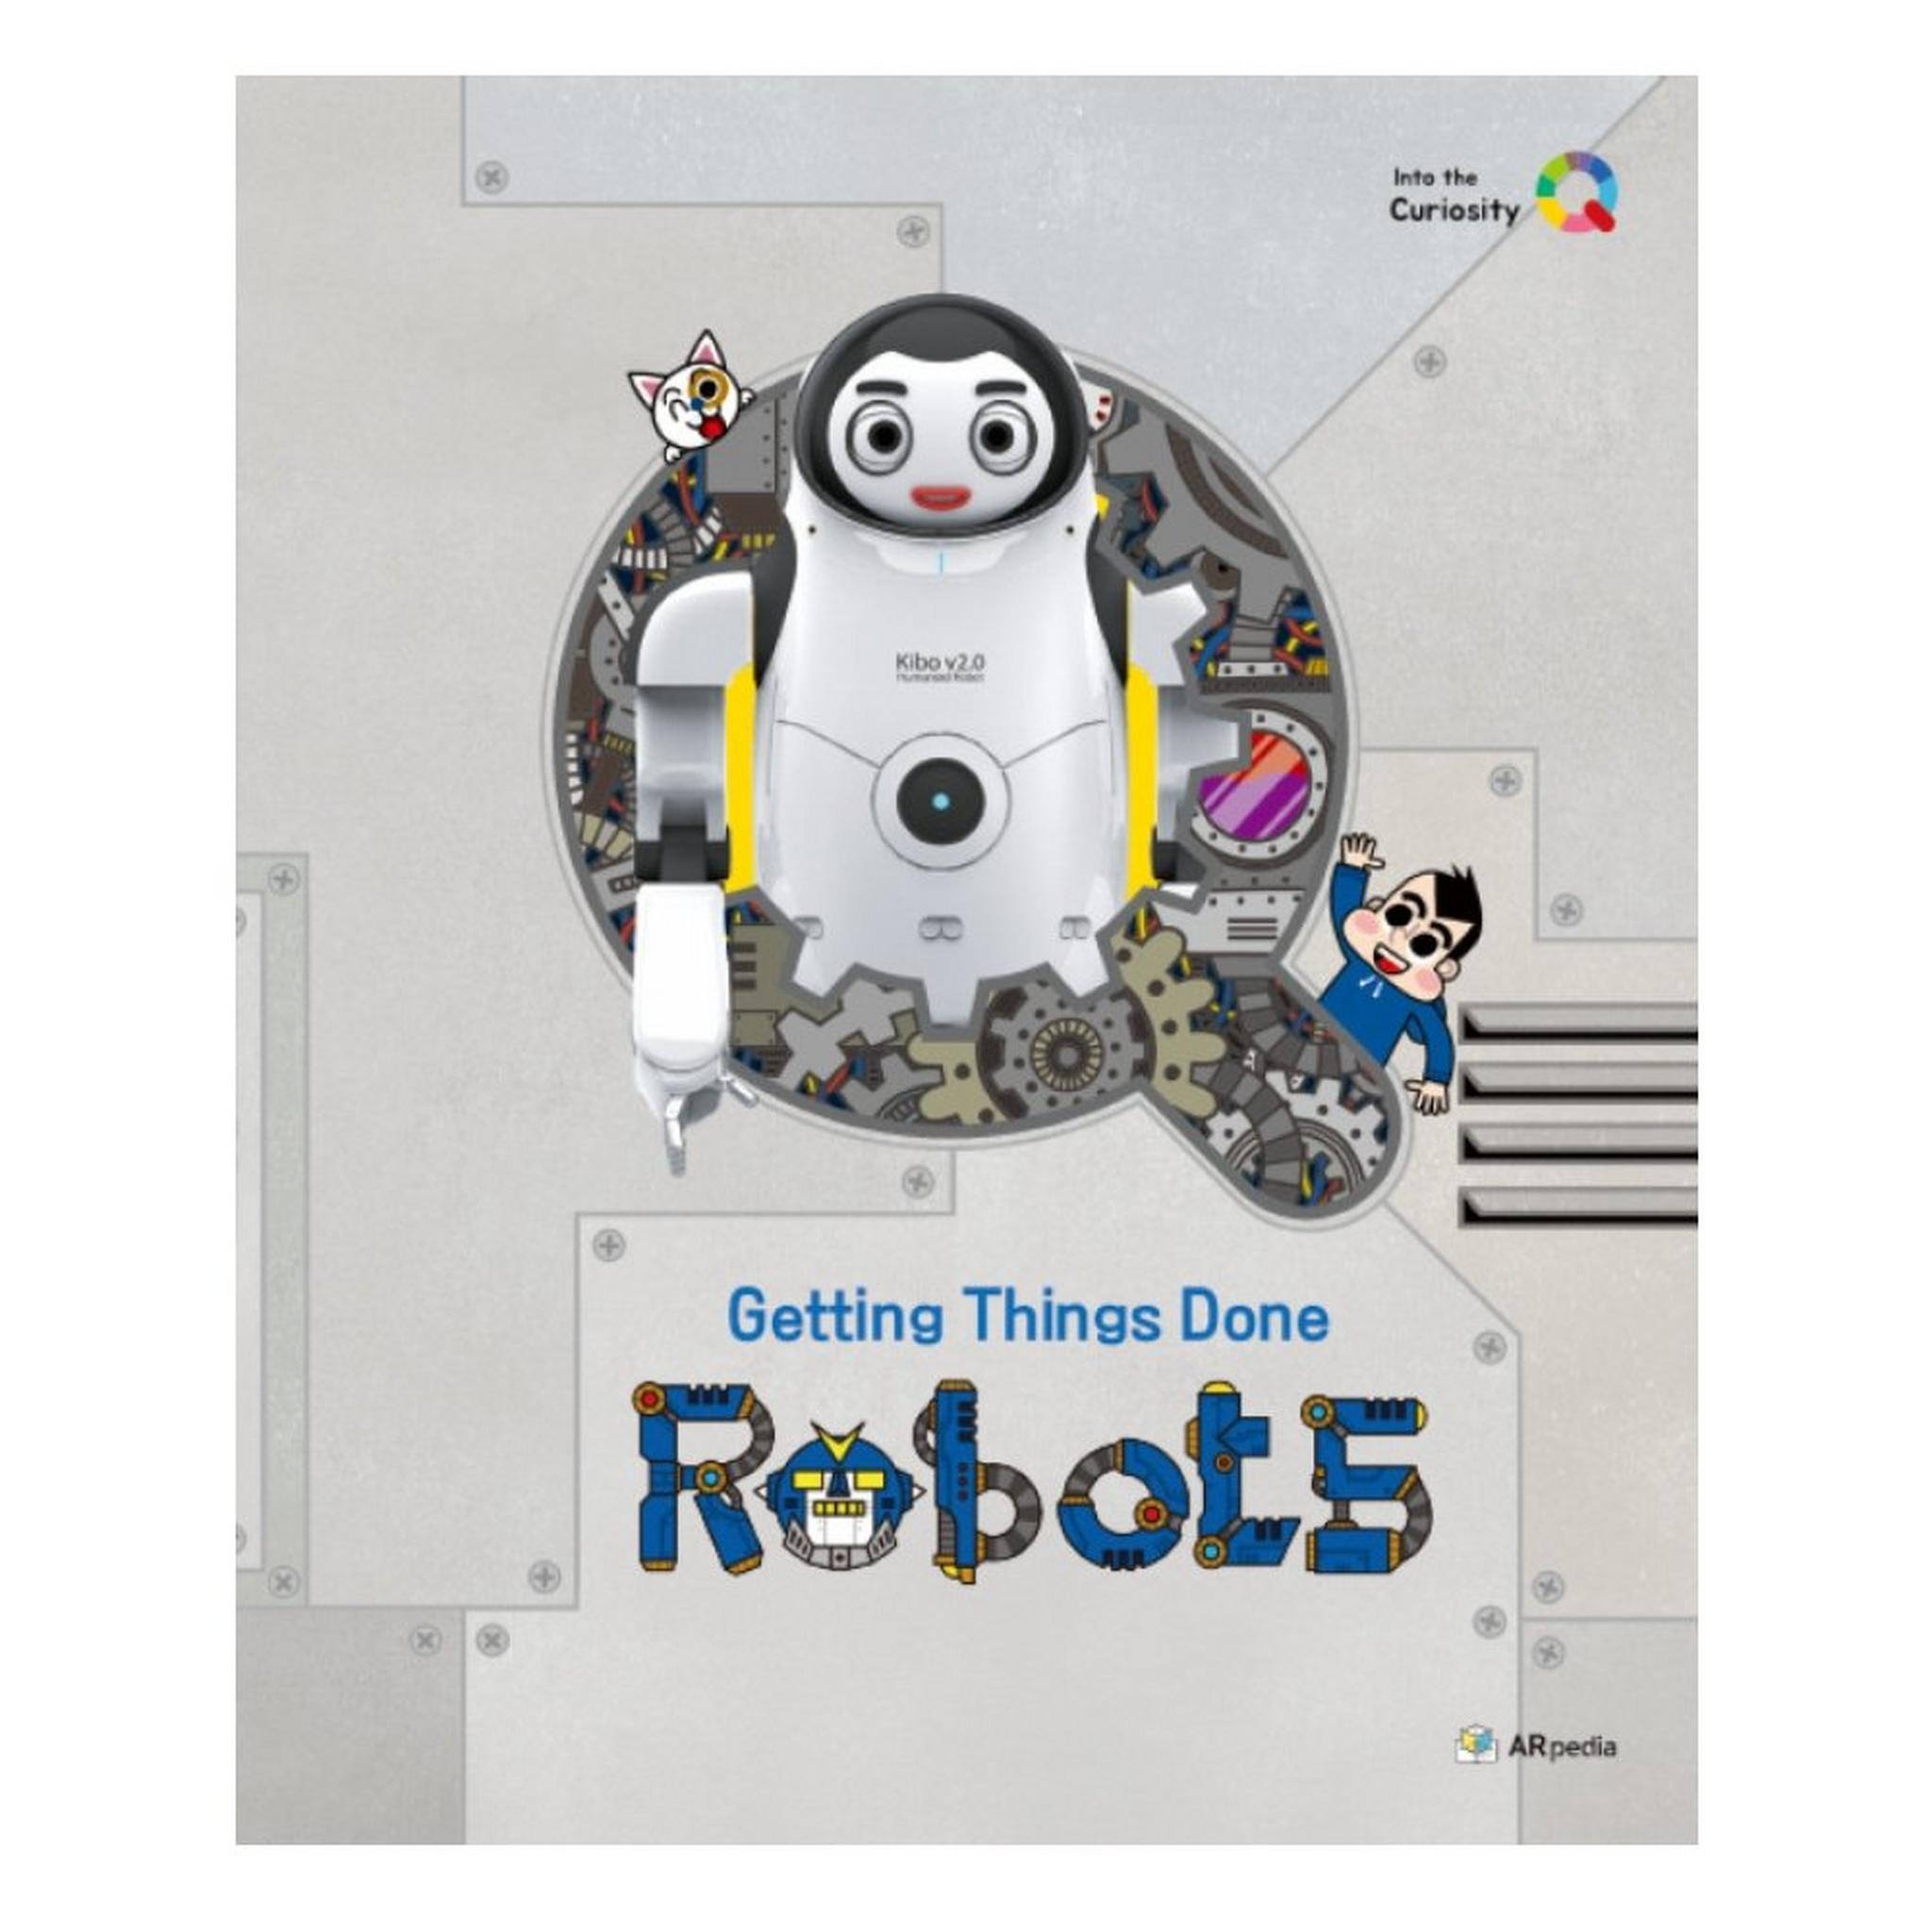 كتاب تعليمي عن الروبوتات من دي جي اي فانتوم - CQ-RB